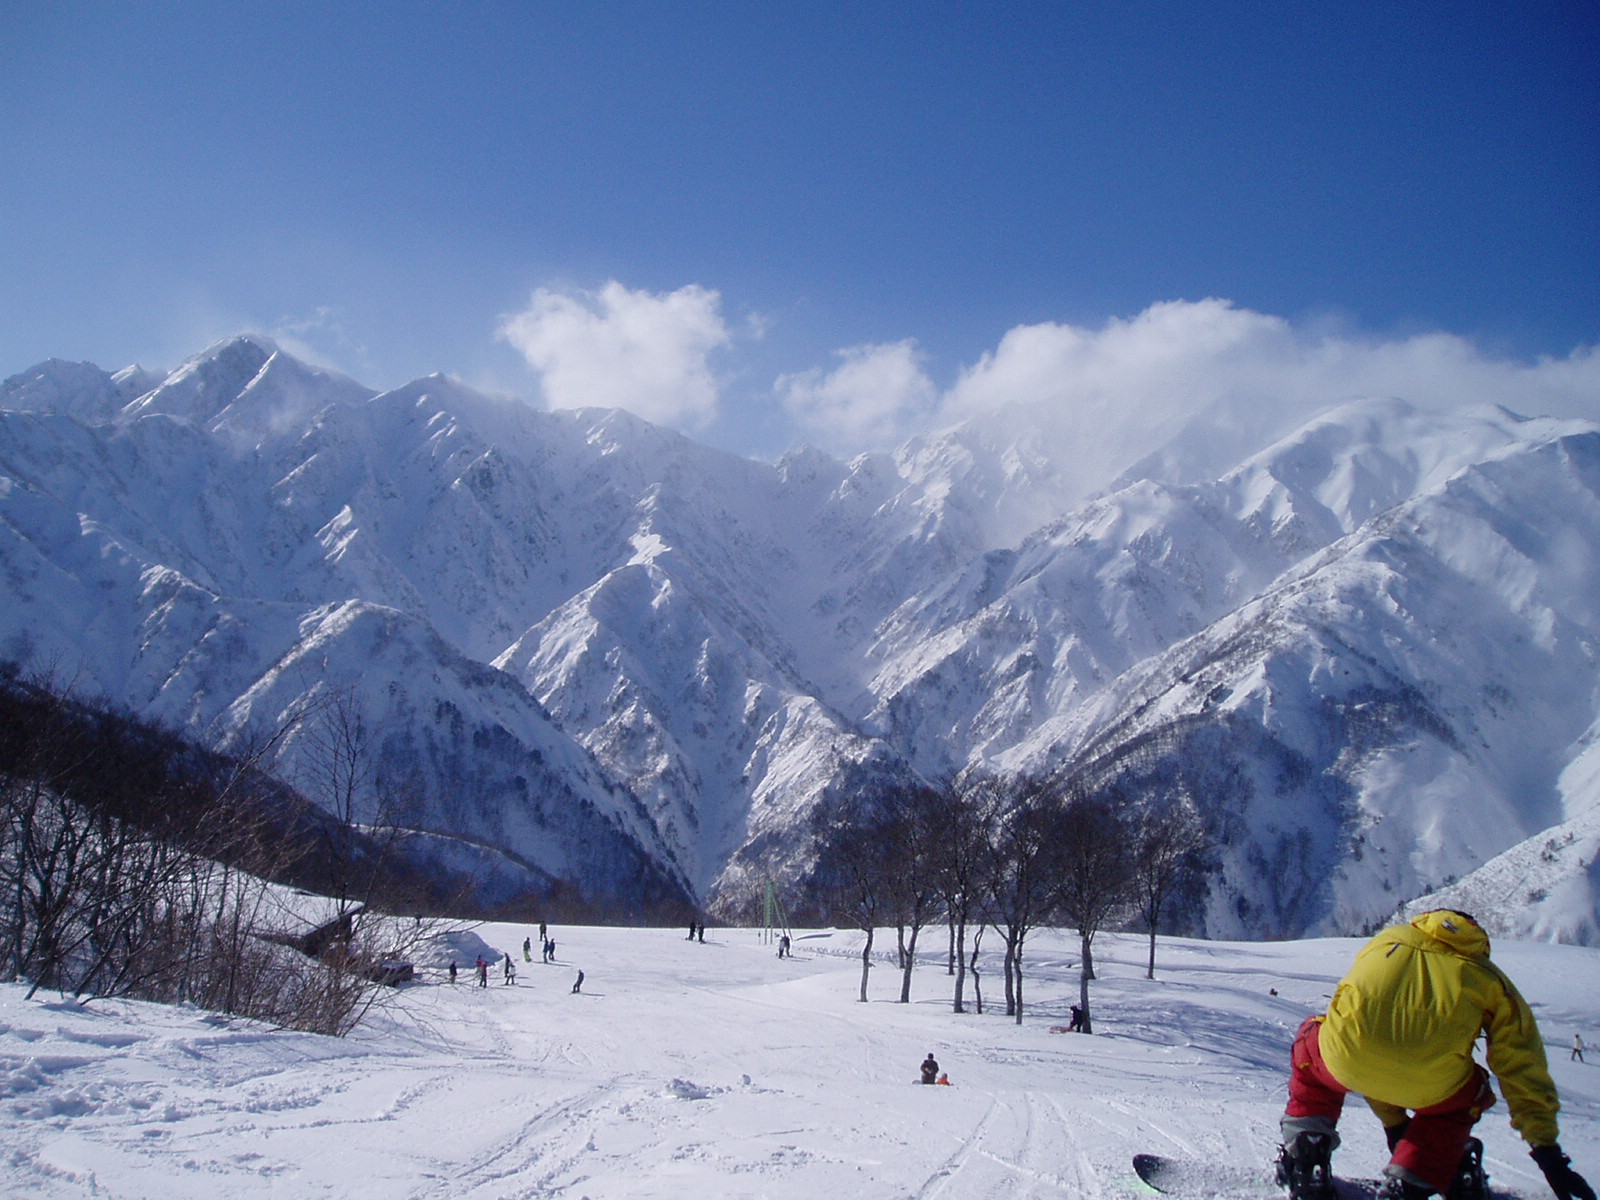 白馬滑雪場